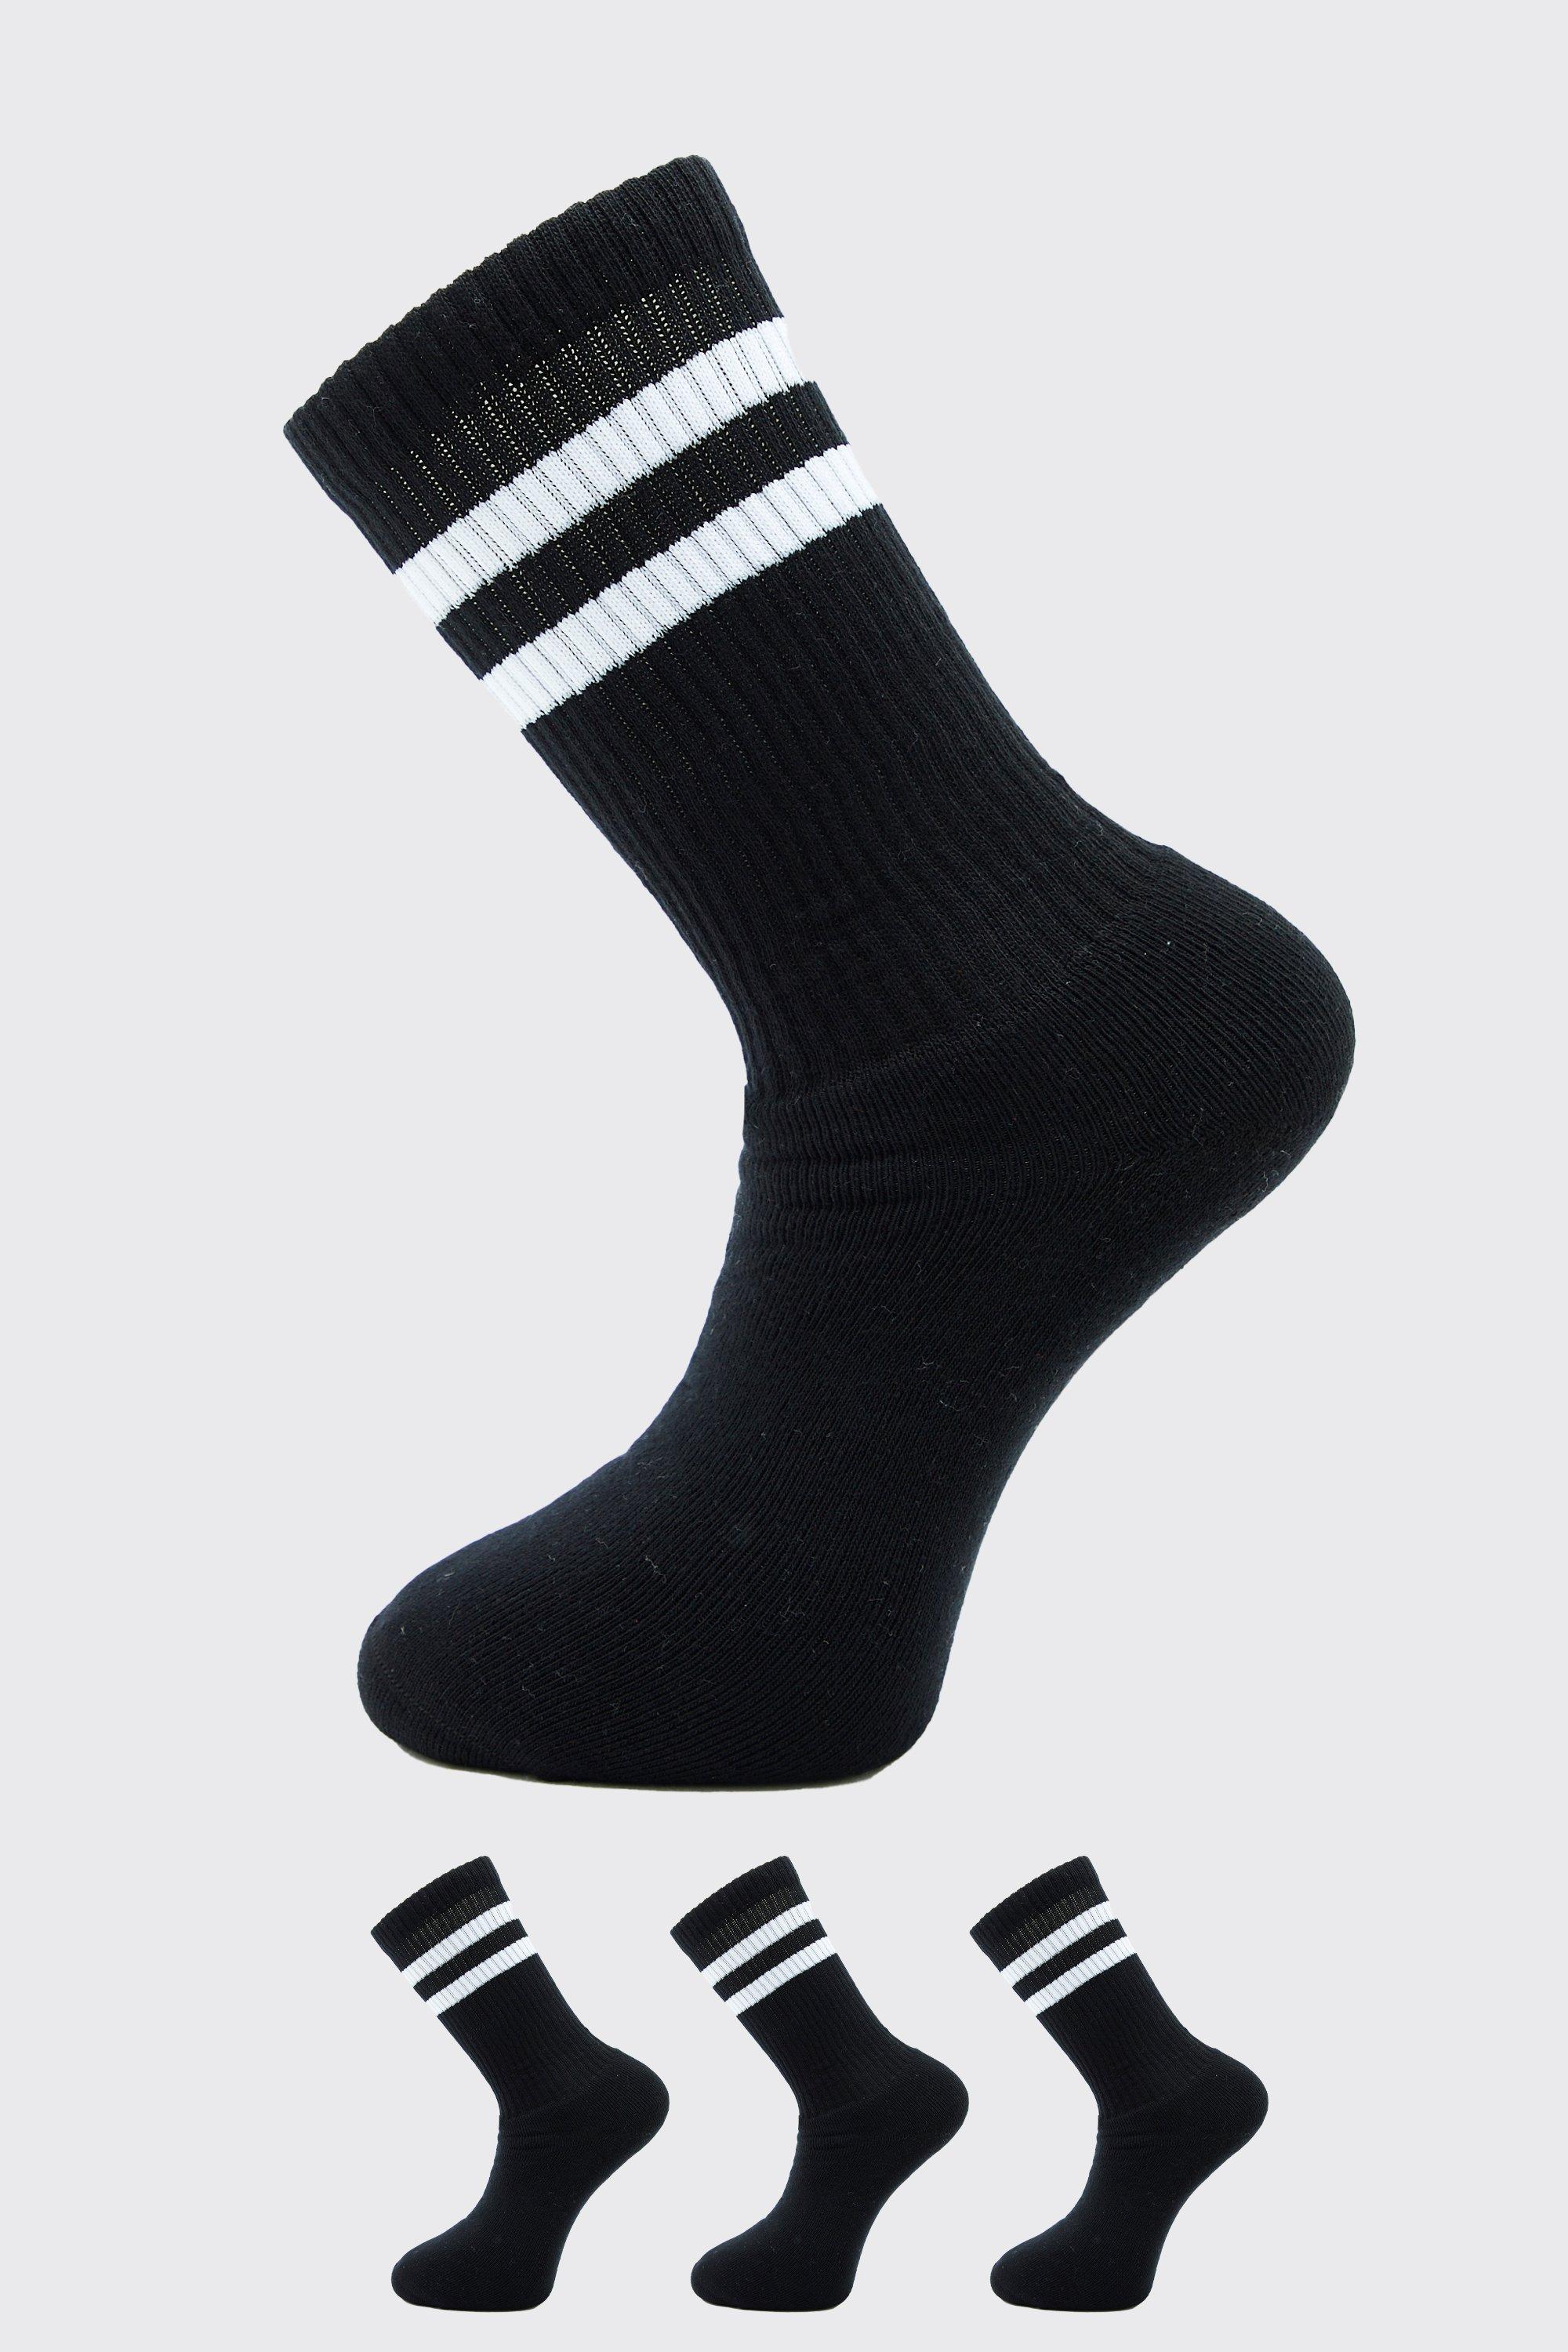 Porto 3 Pack Socks in Black,Burgundy. Revolve Men Clothing Underwear Socks 